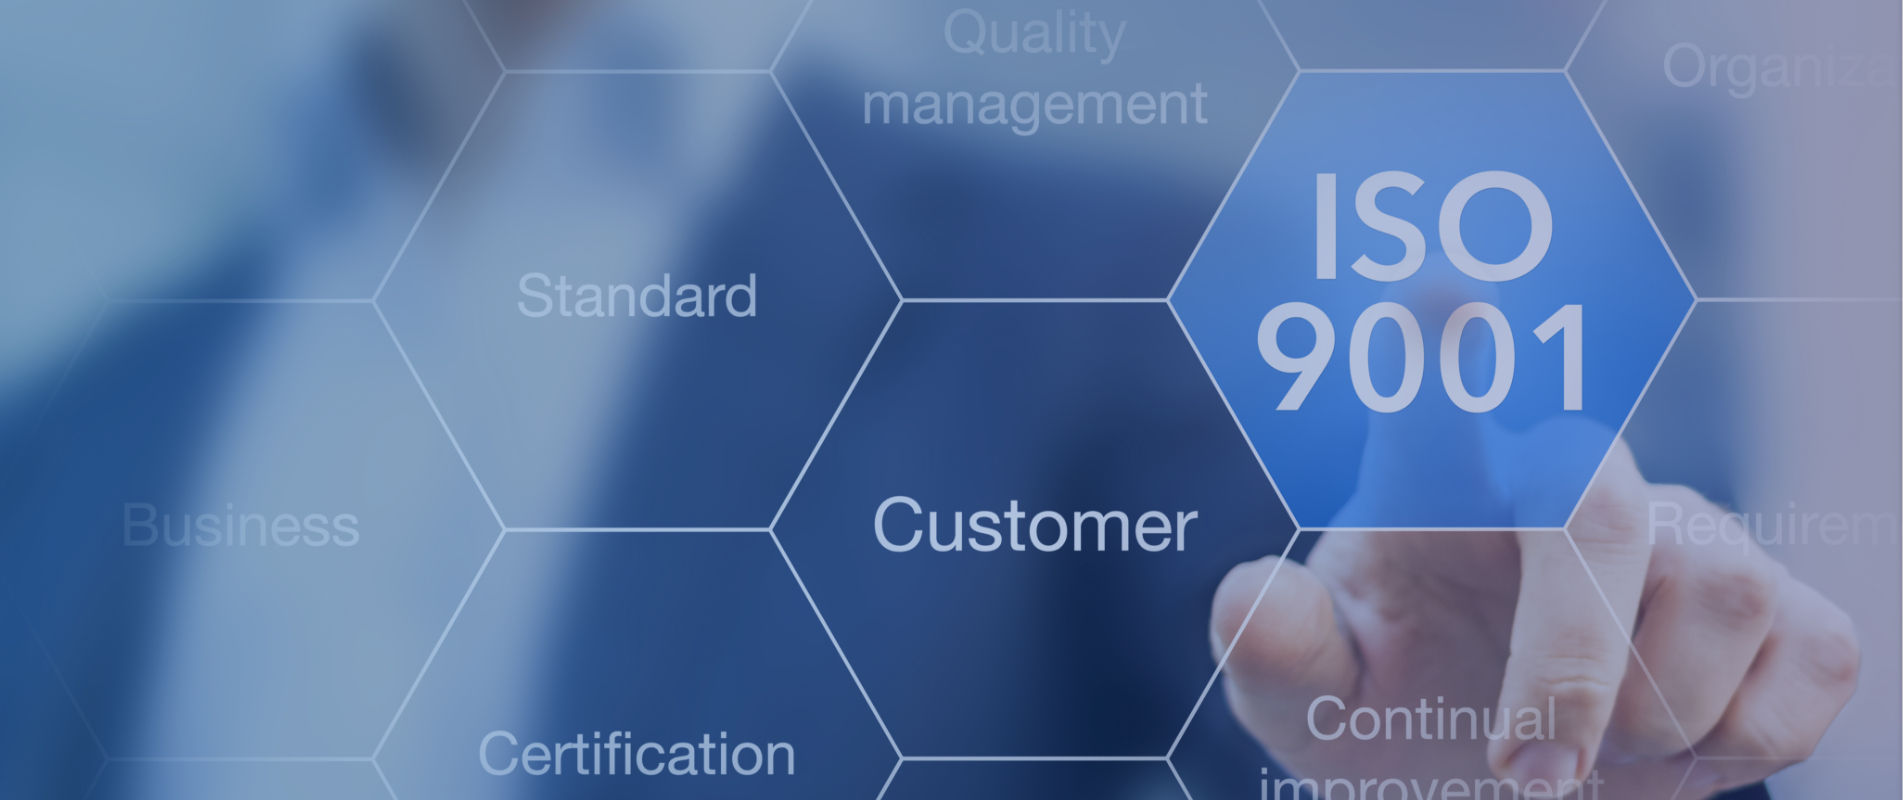 ISO 9001 zertifiziert - Qualität